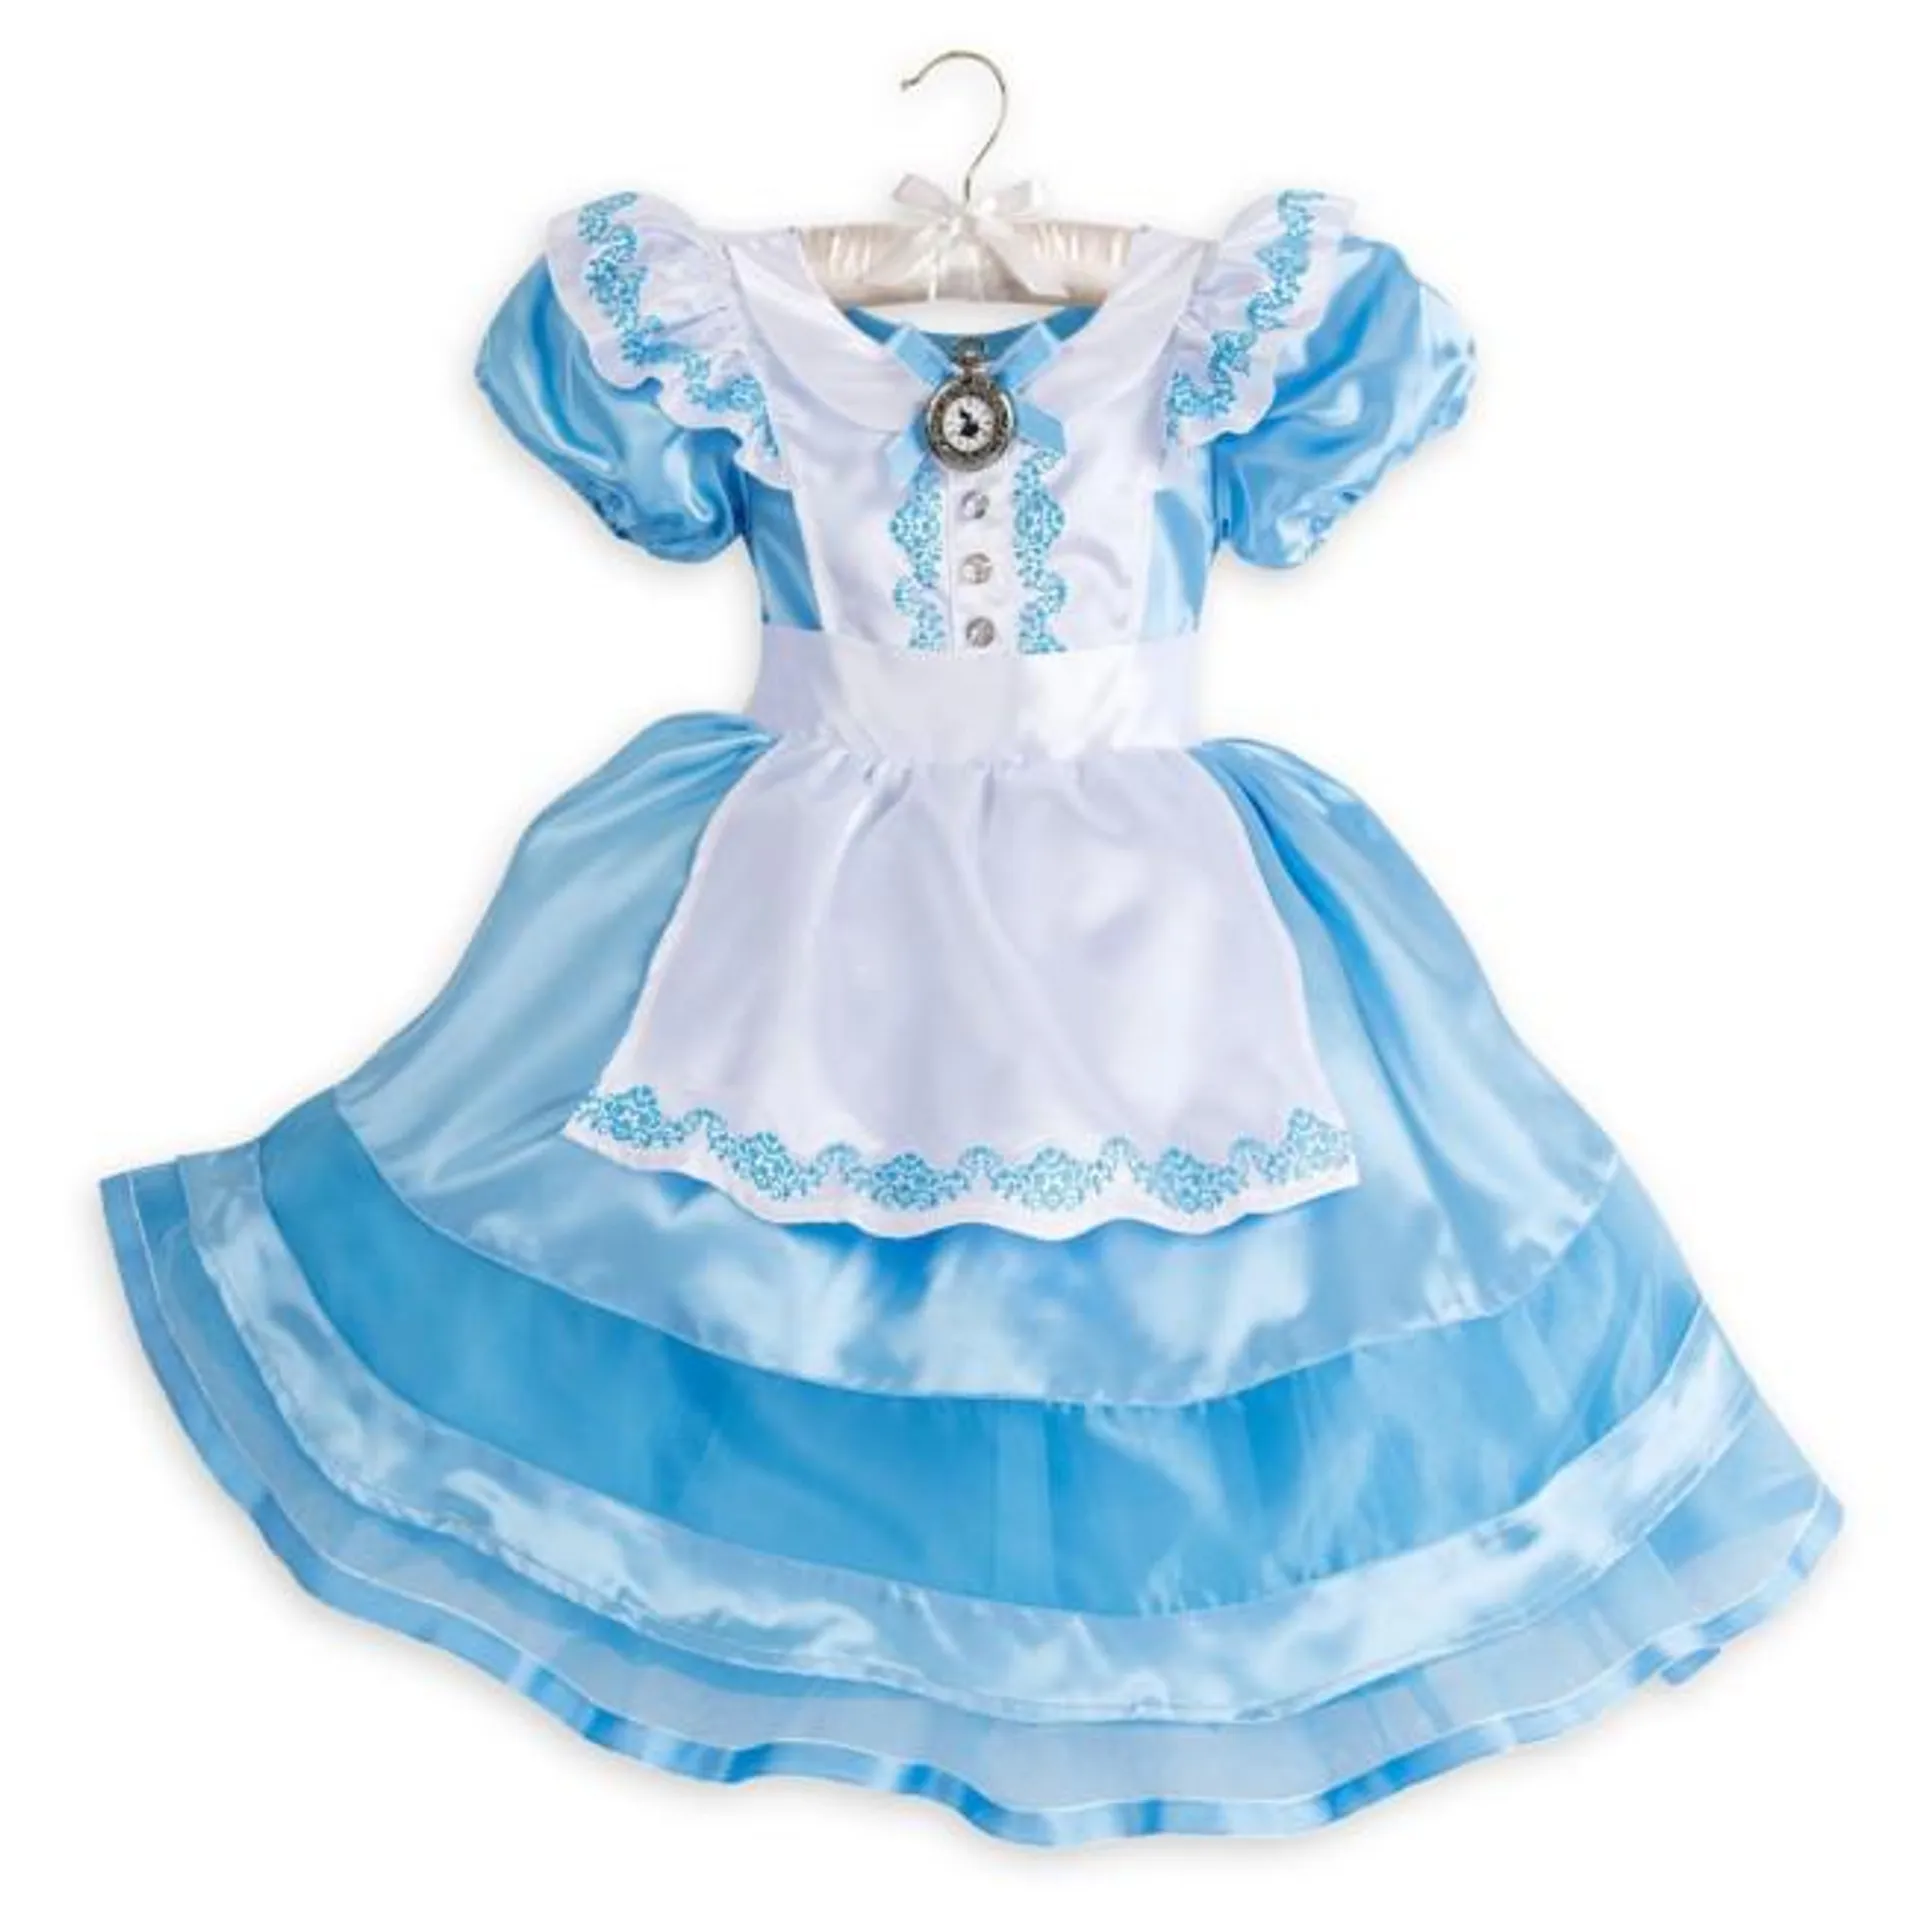 Alice Costume For Kids, Alice in Wonderland